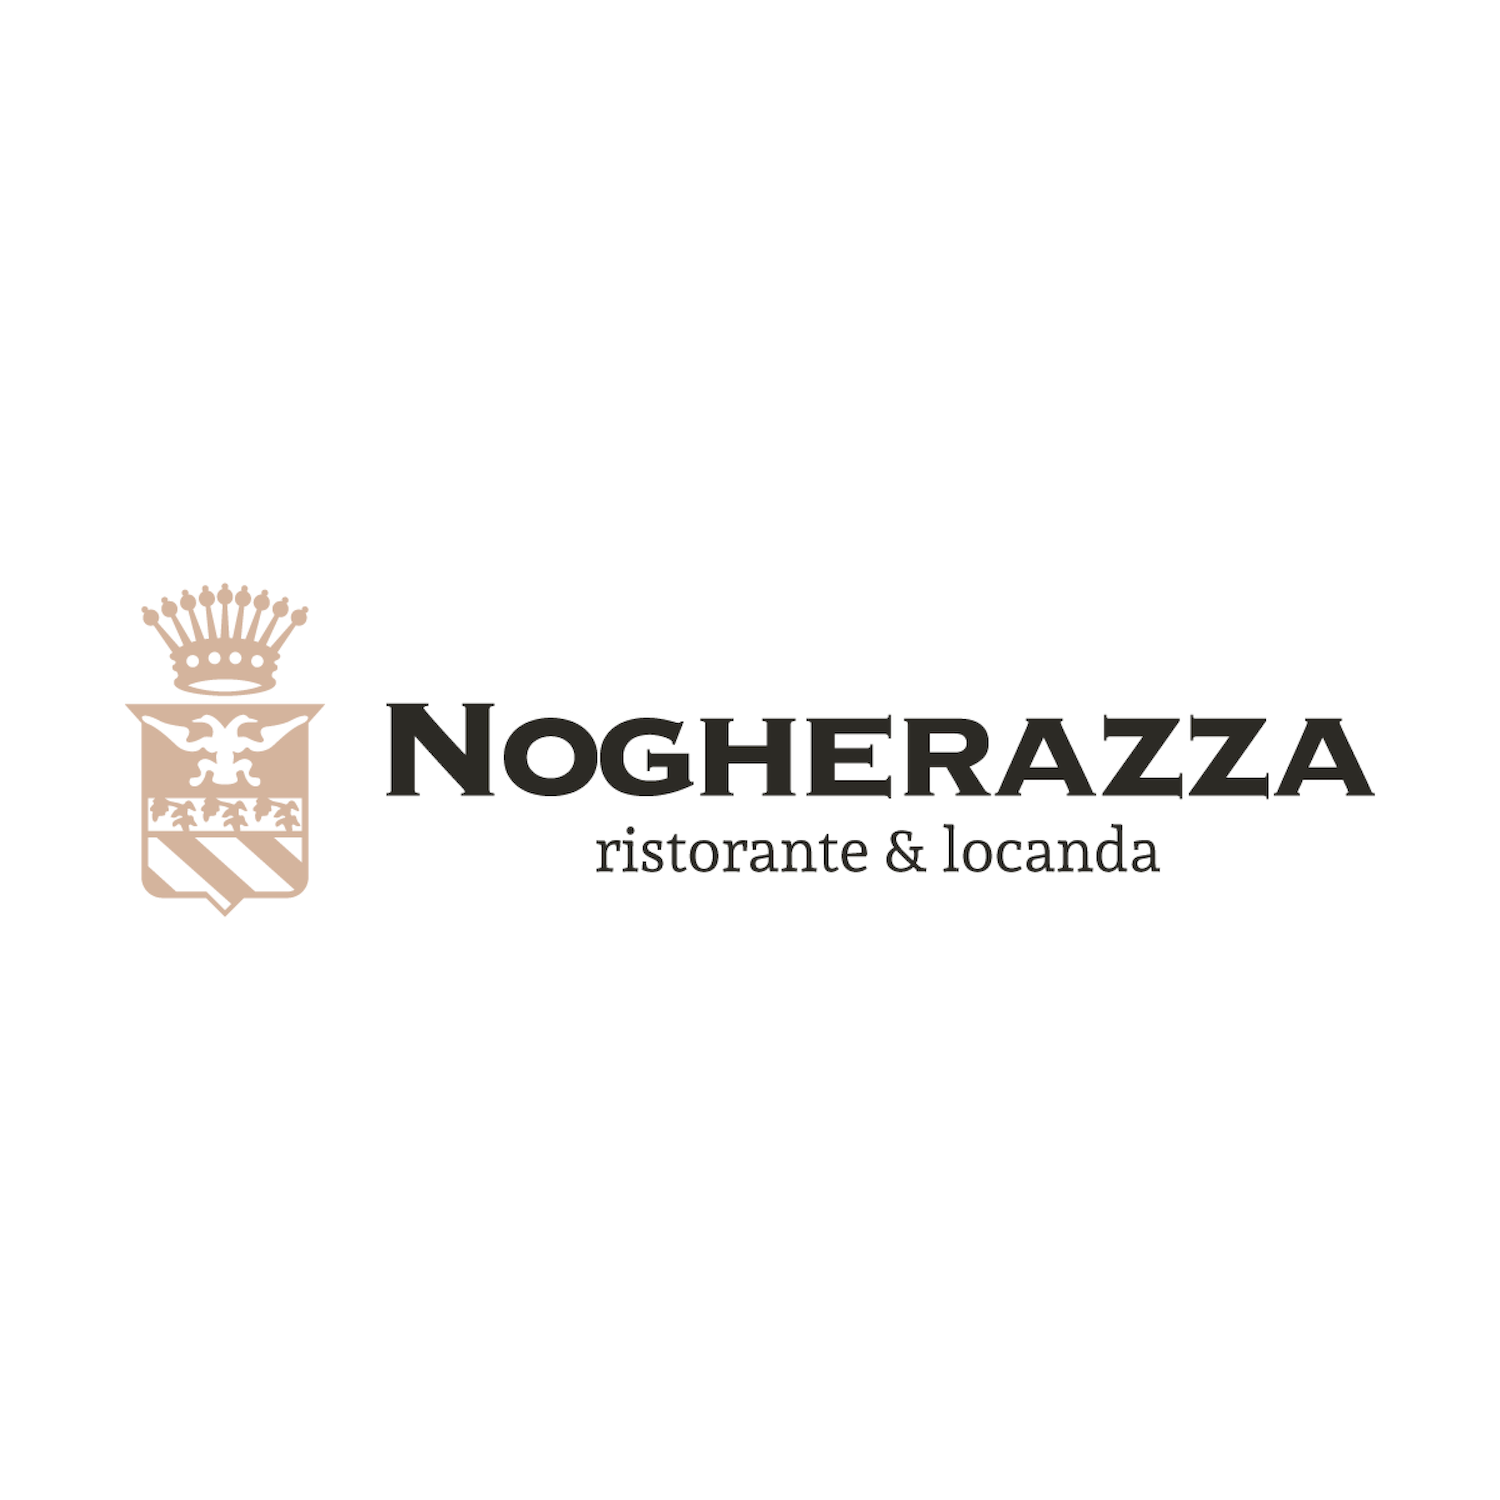 Nogherazza